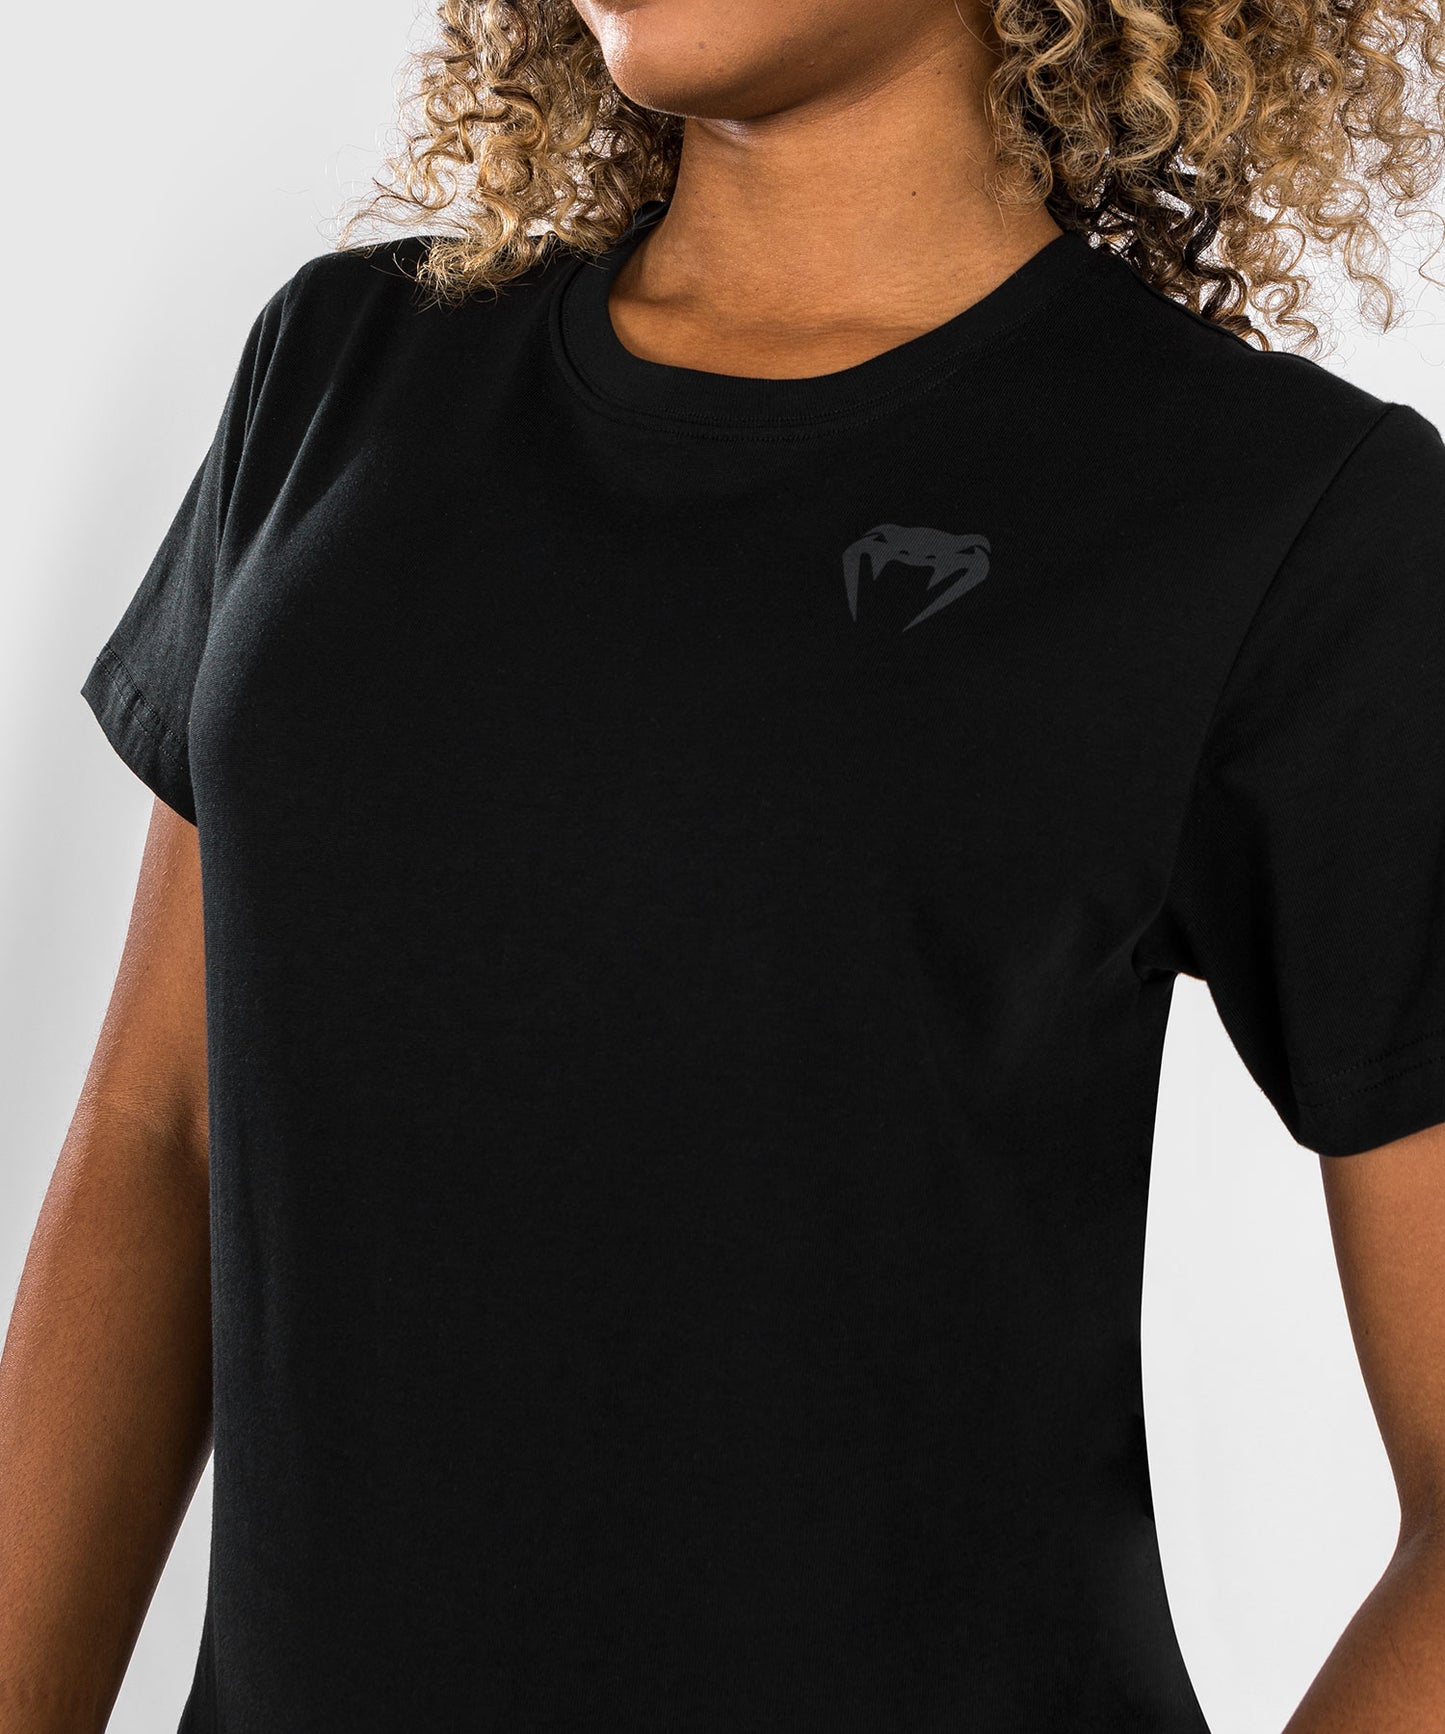 Venum x Dodge Demon 170 Camiseta de Mujer - Negra